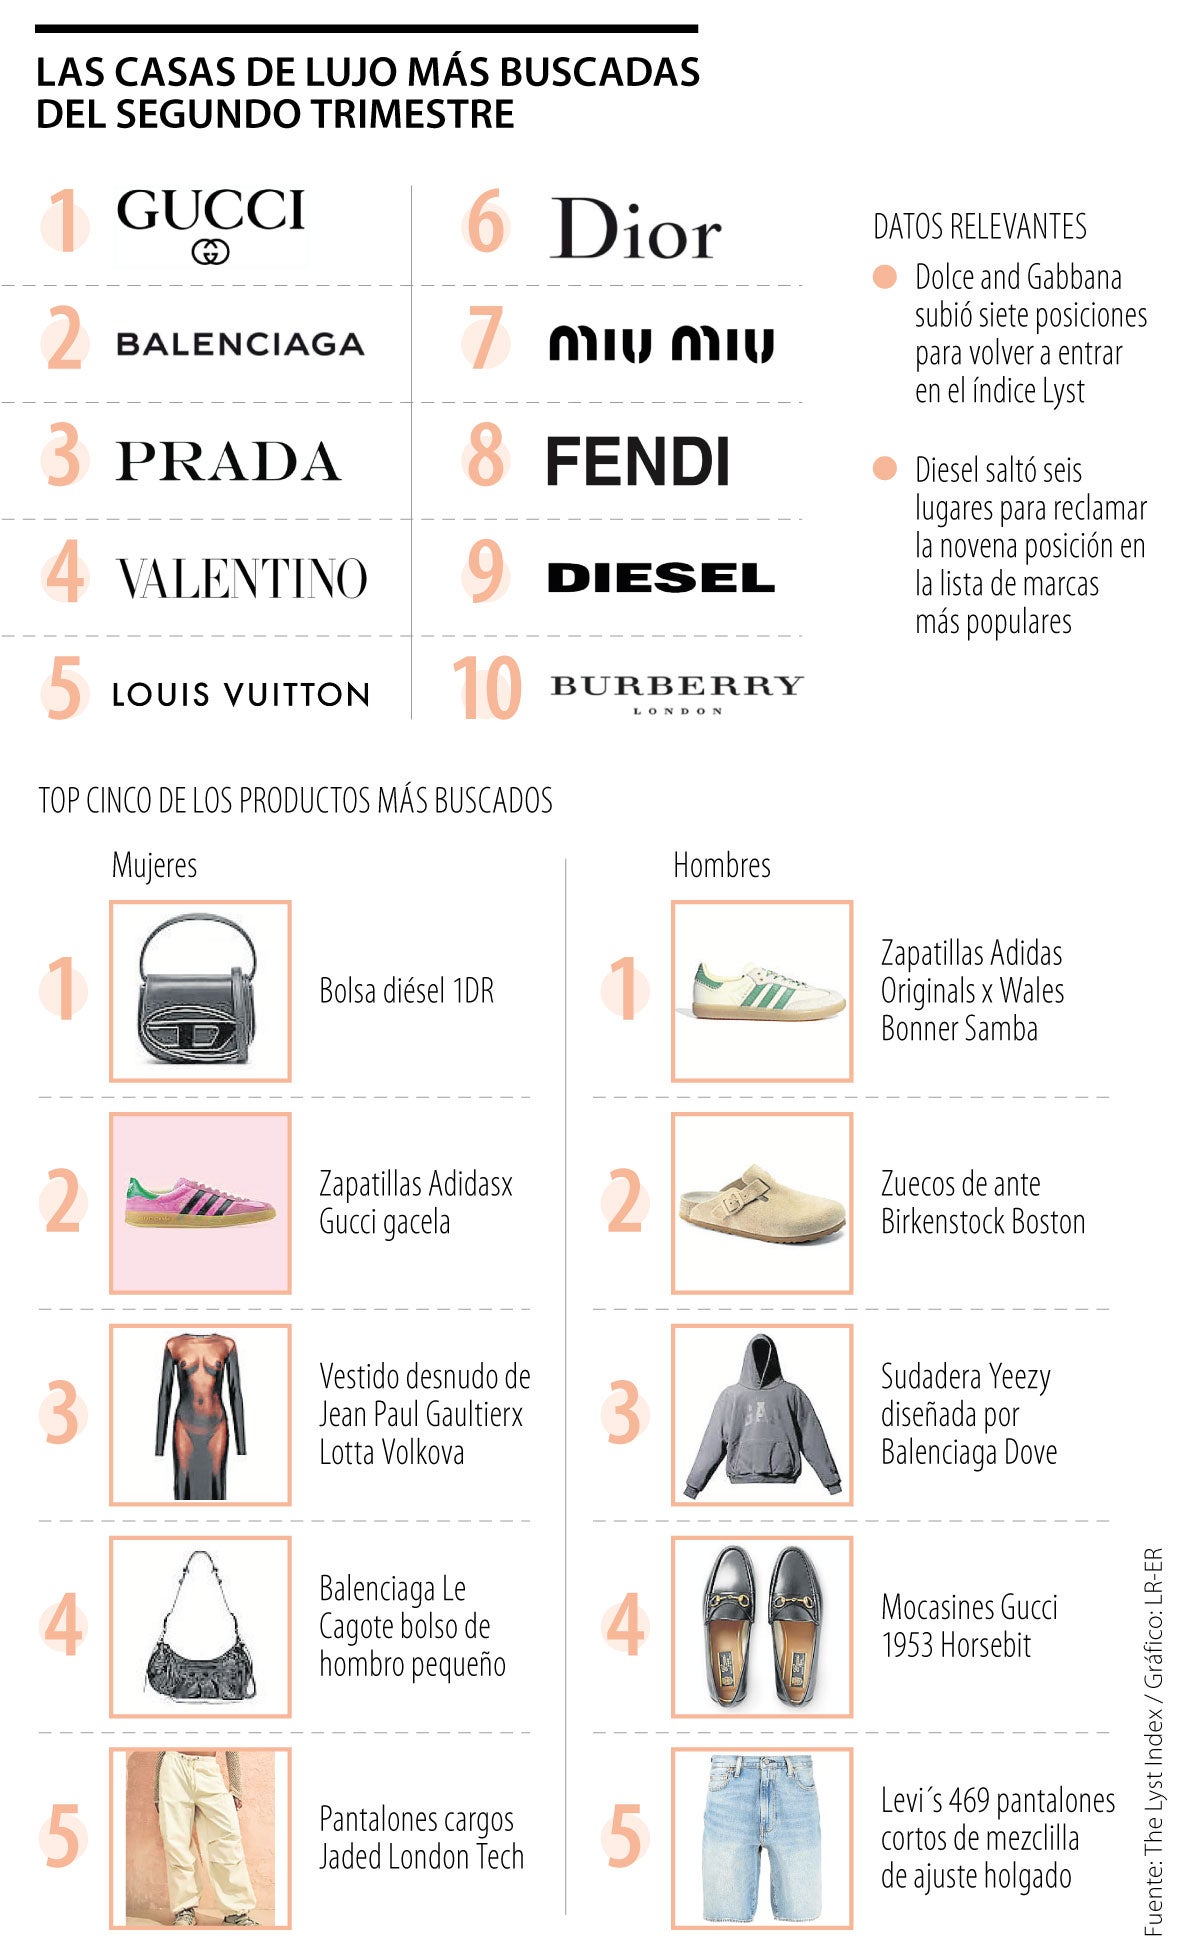 Balenciaga, Gucci y Prada ¿cuáles son las marcas de moda más